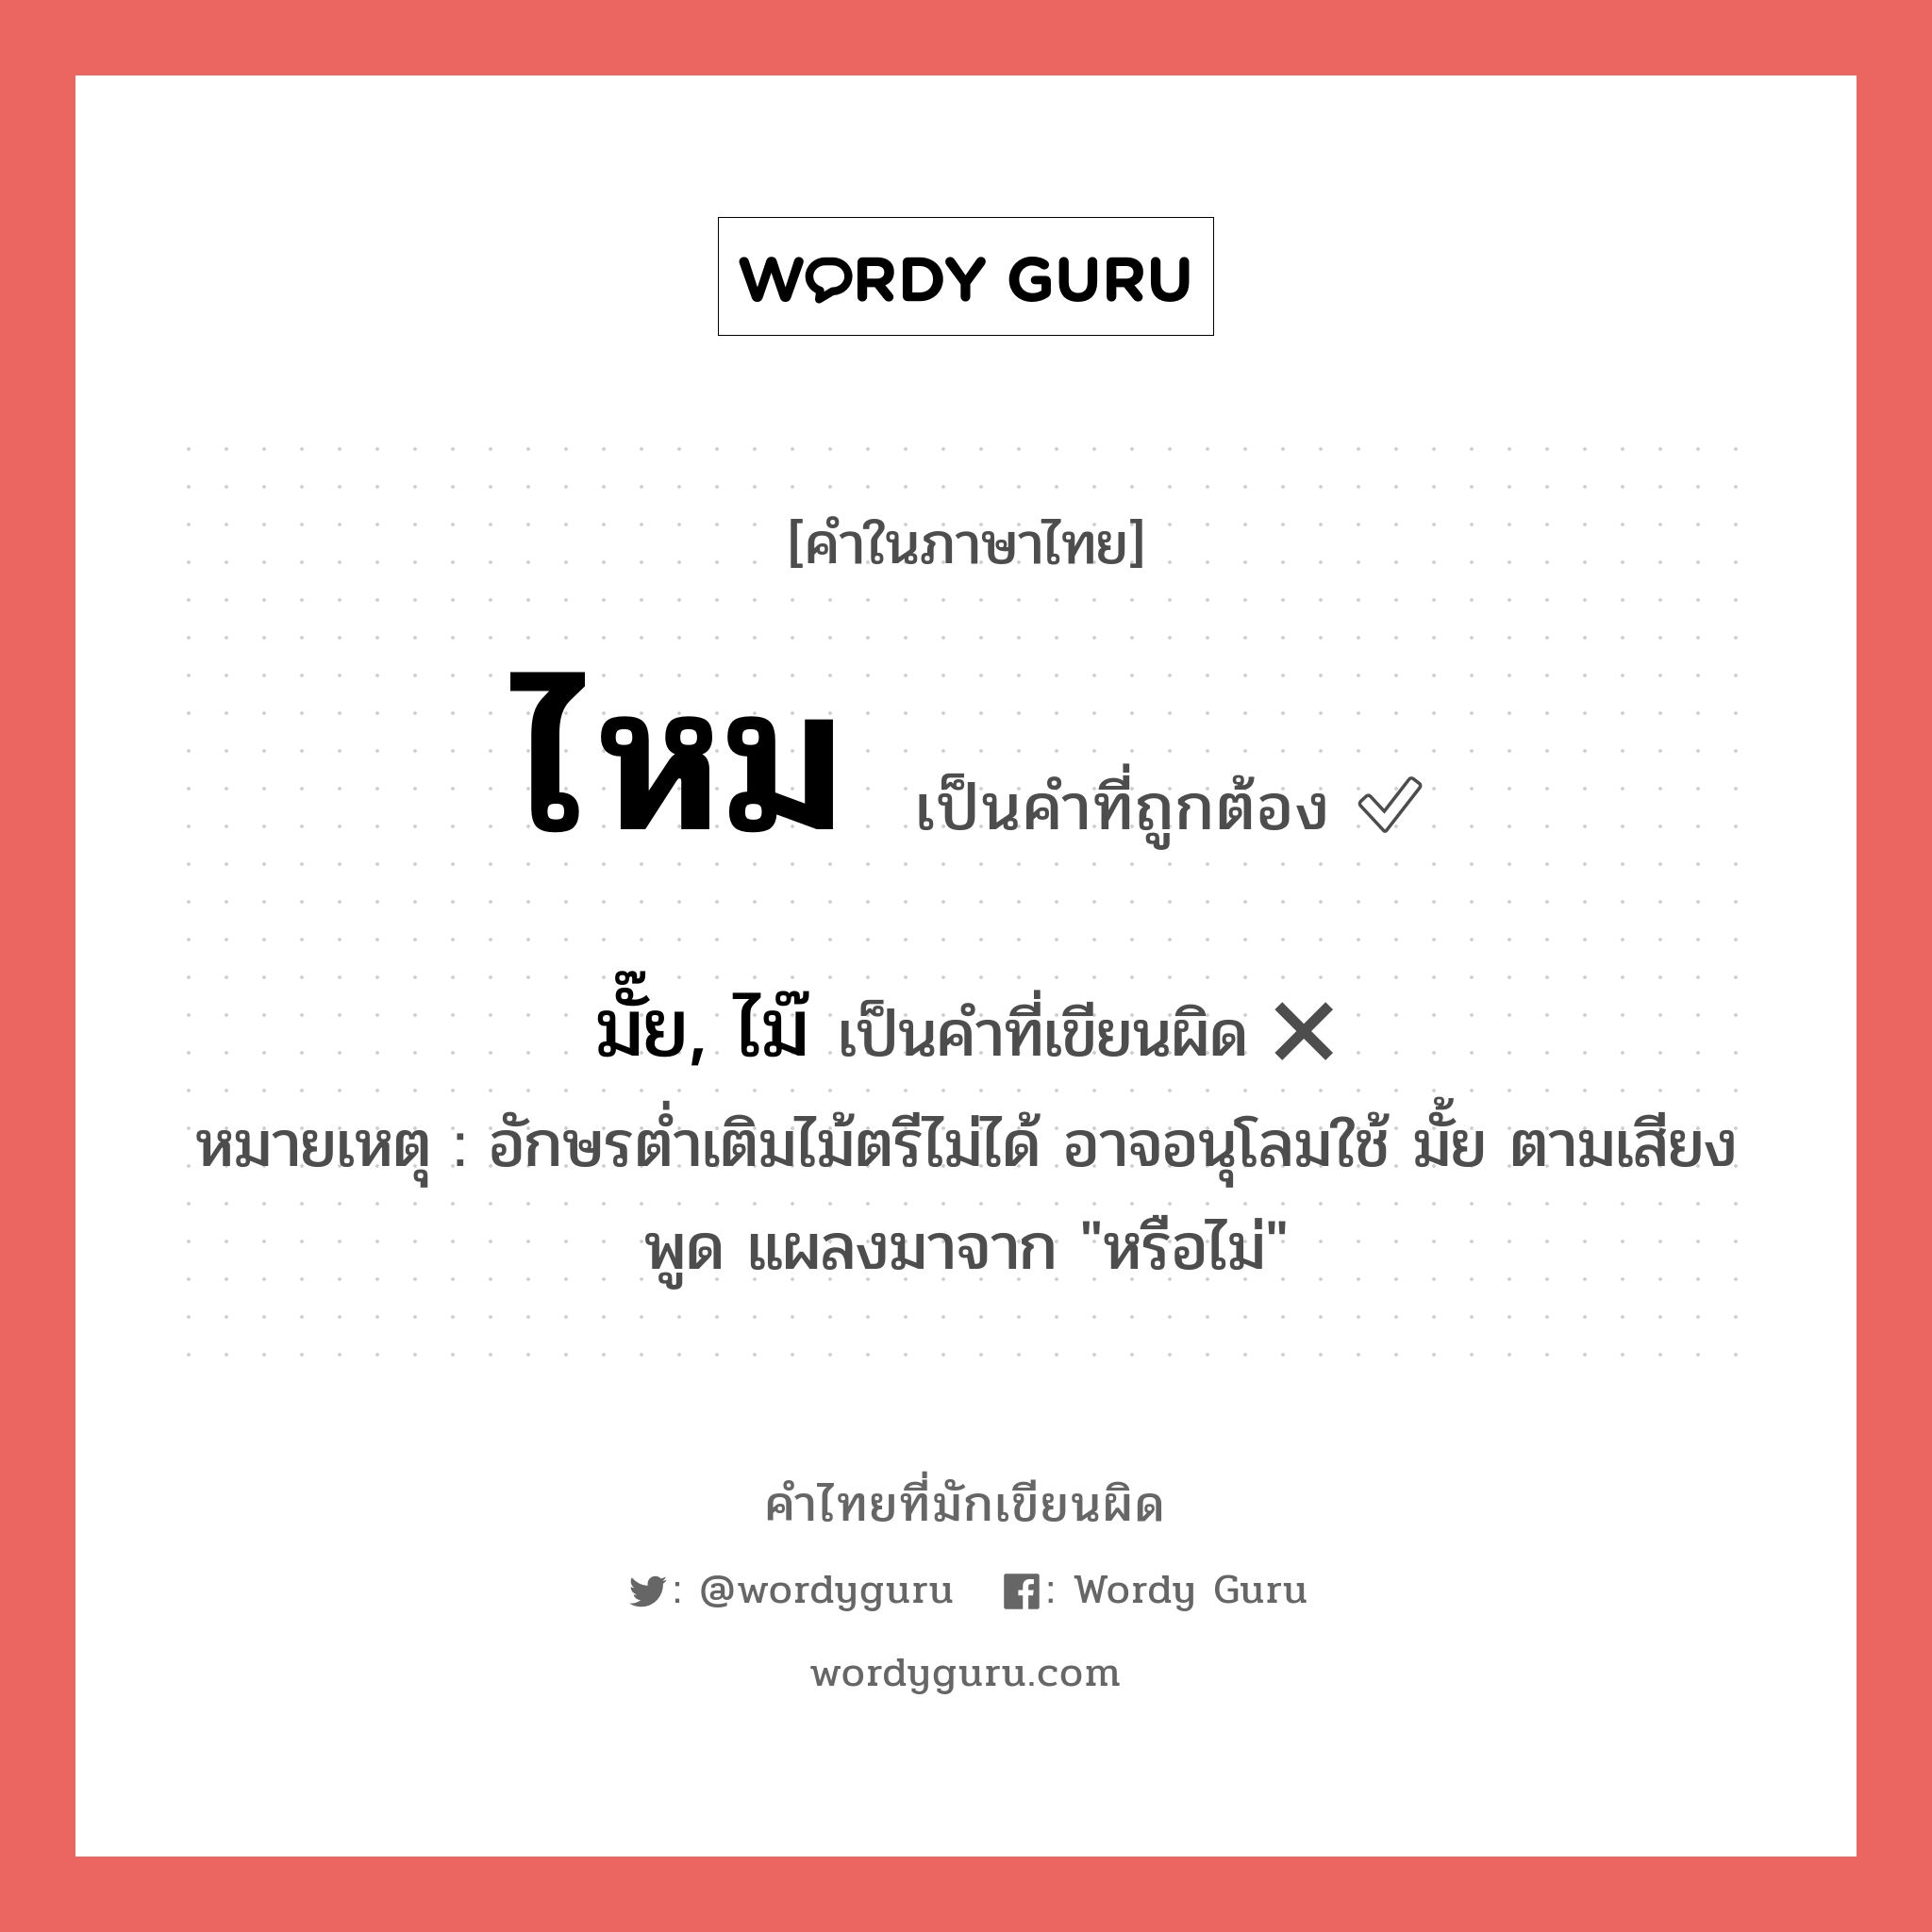 ไหม หรือ มั๊ย, ไม๊ คำไหนเขียนถูก?, คำในภาษาไทยที่มักเขียนผิด ไหม คำที่ผิด ❌ มั๊ย, ไม๊ หมายเหตุ อักษรต่ำเติมไม้ตรีไม่ได้ อาจอนุโลมใช้ มั้ย ตามเสียงพูด แผลงมาจาก "หรือไม่"